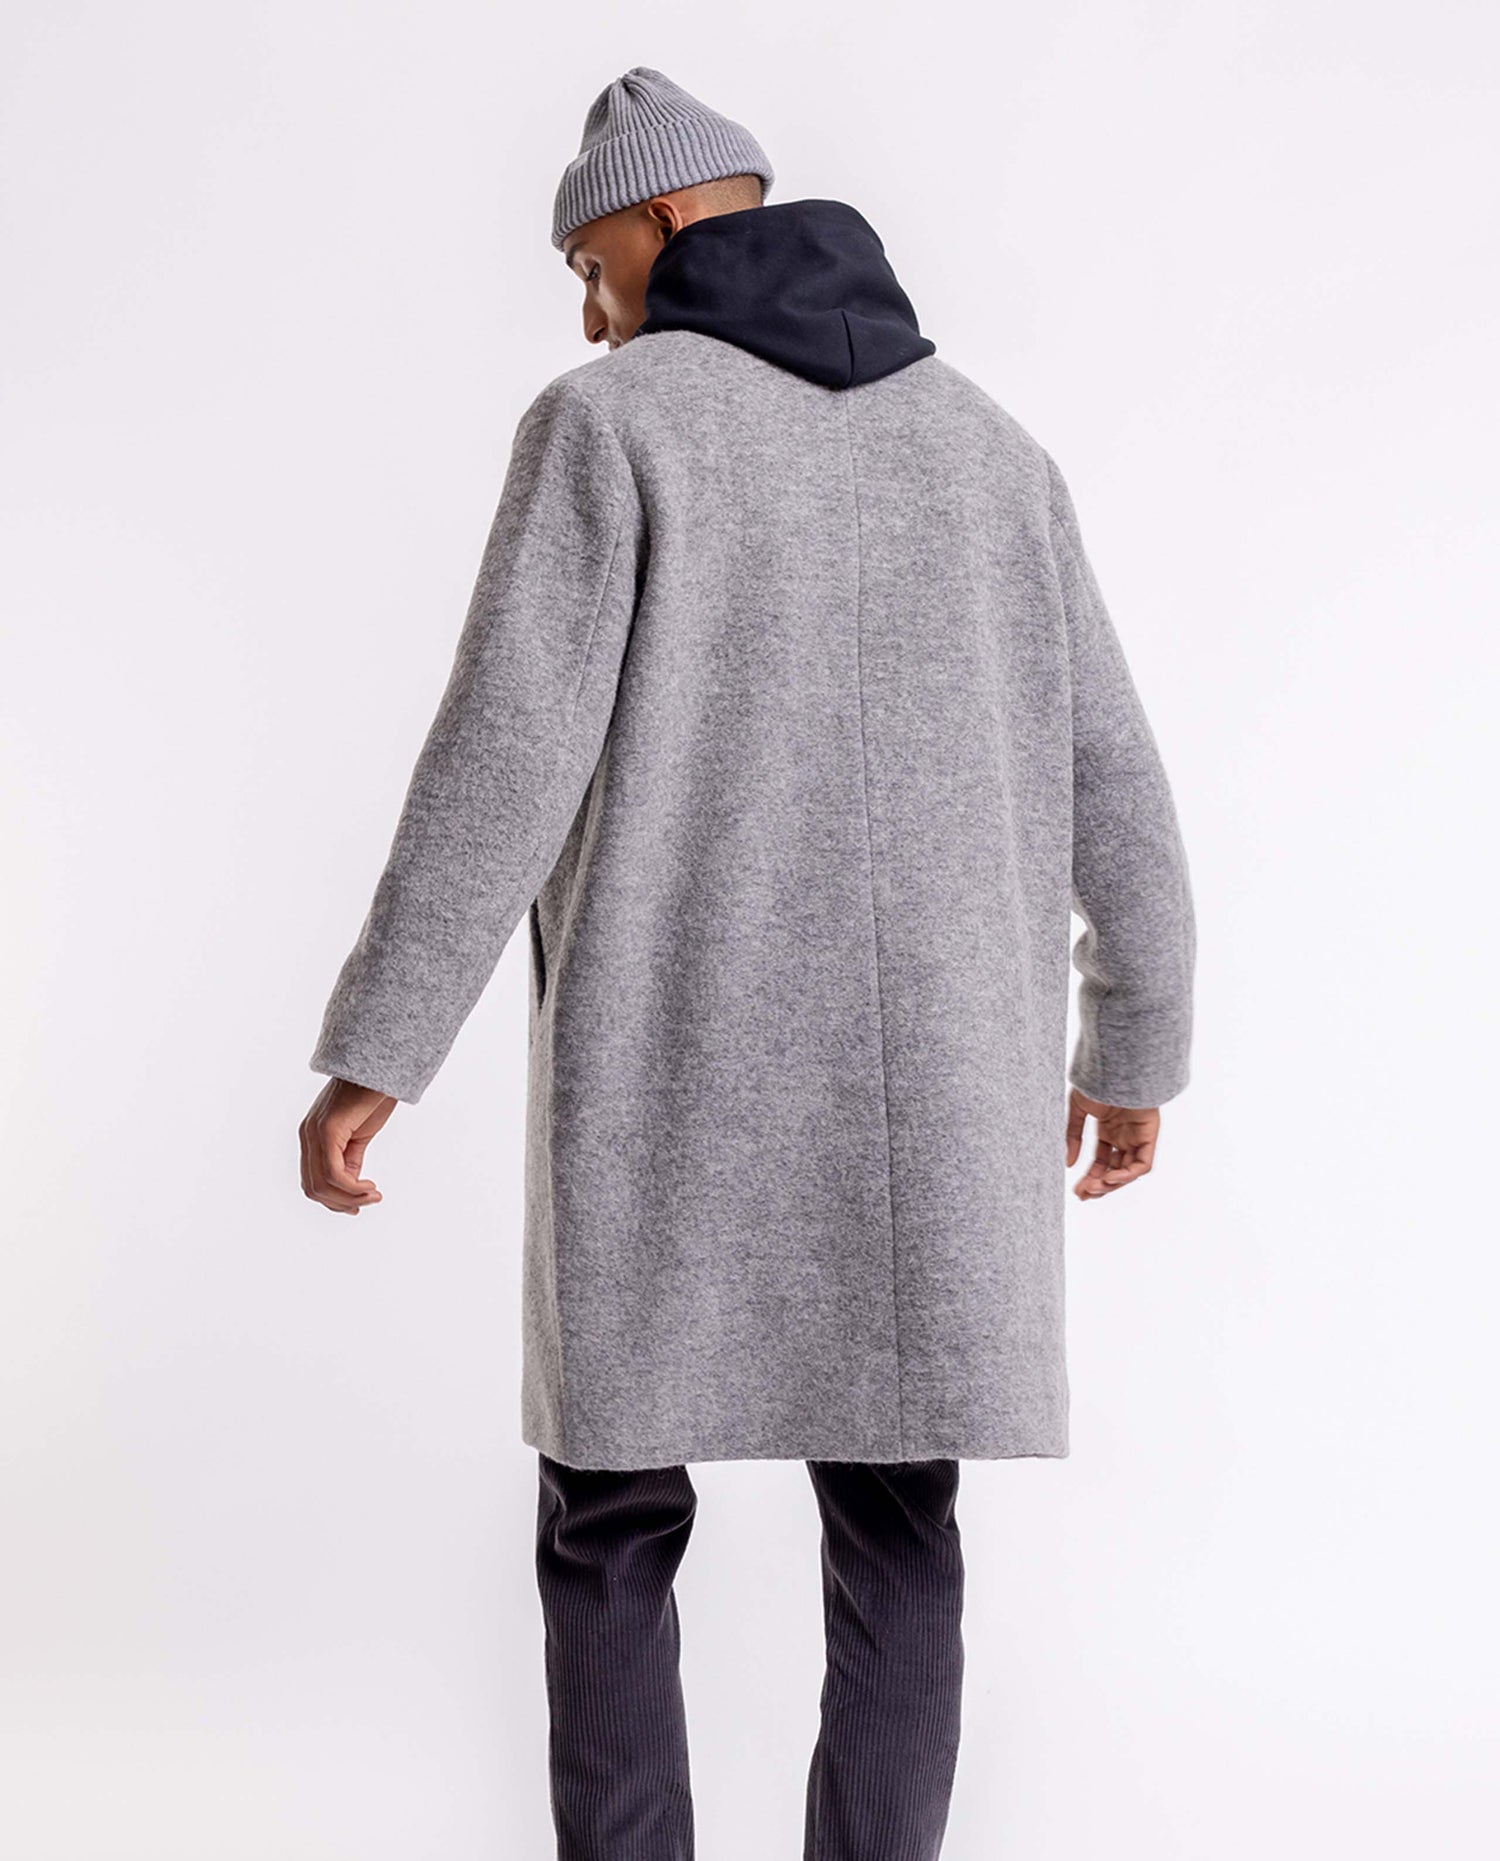 marché commun rotholz manteau homme laine et coton biologique gris chiné